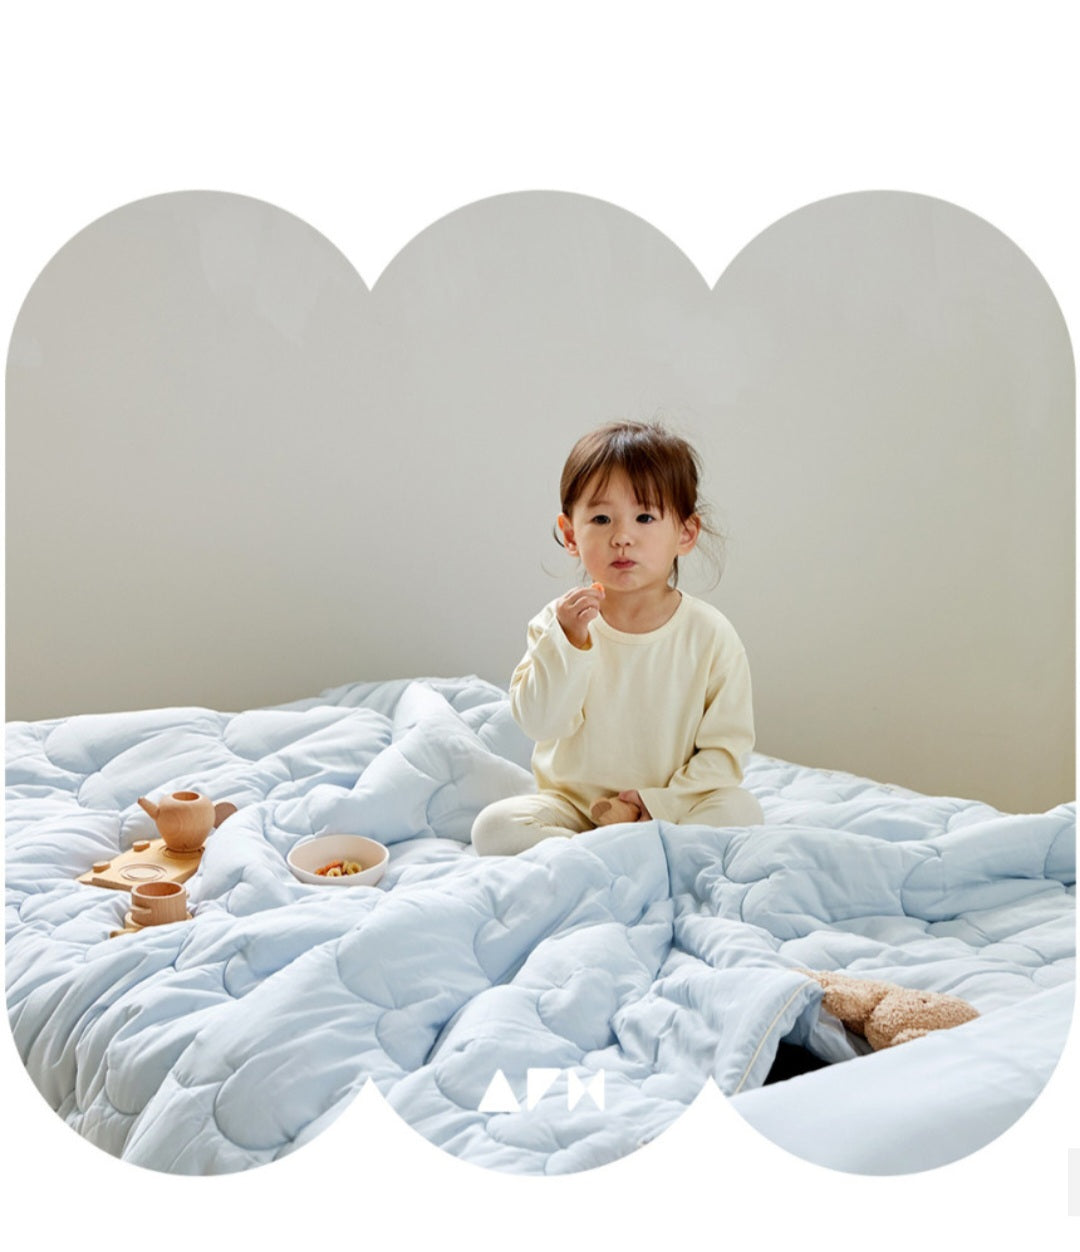 ALL4HOME Cloud Modal Comforter & Pillow Set